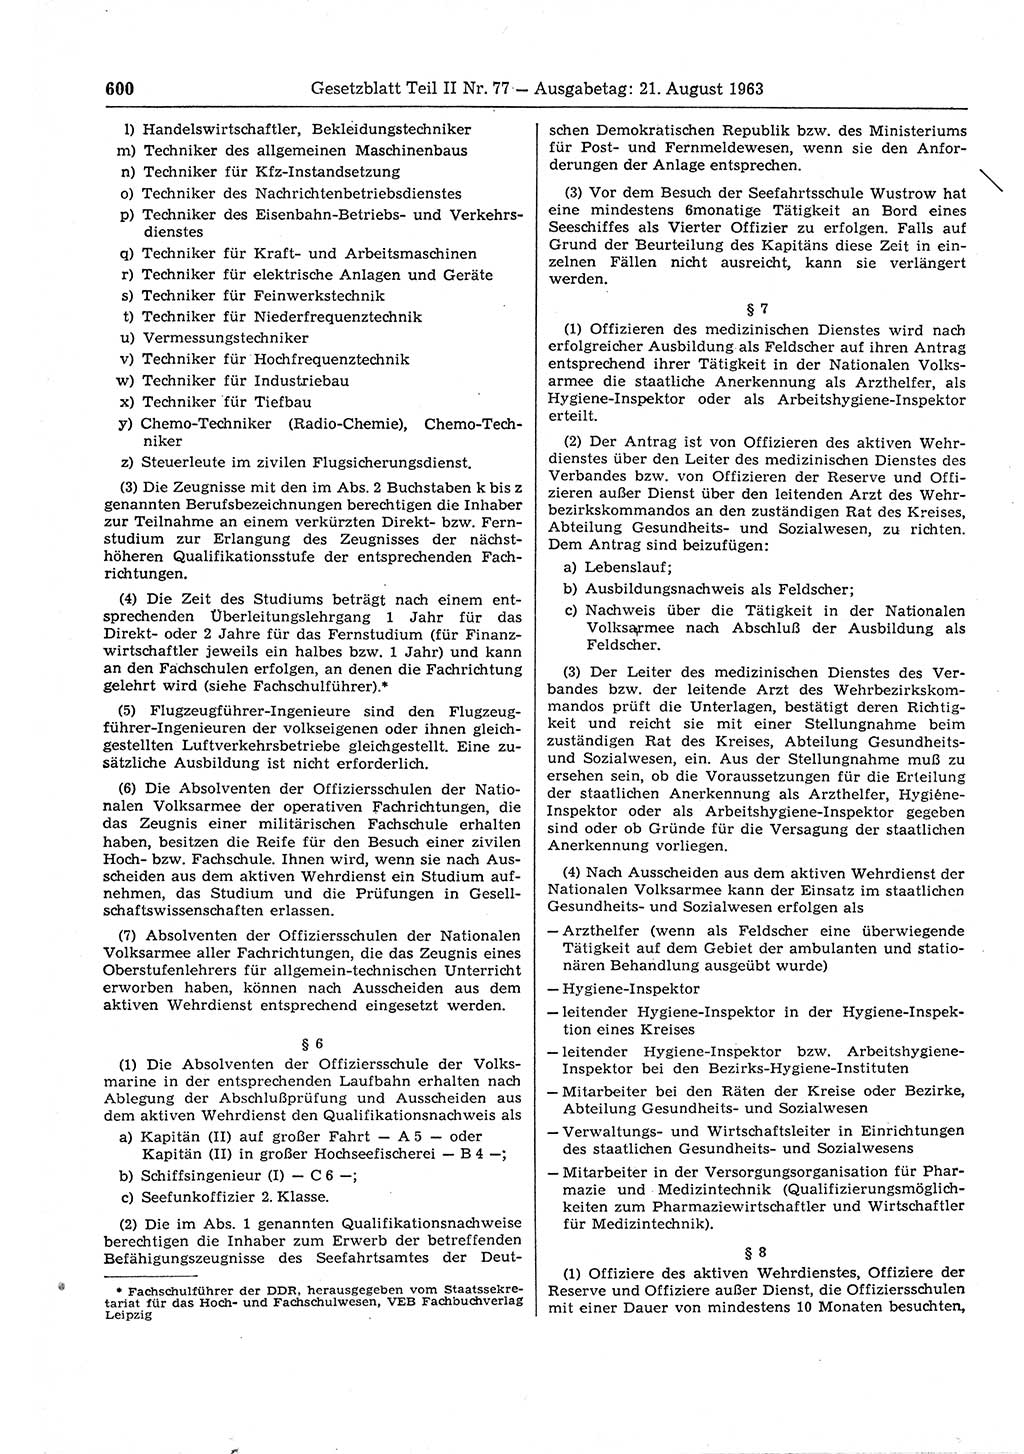 Gesetzblatt (GBl.) der Deutschen Demokratischen Republik (DDR) Teil ⅠⅠ 1963, Seite 600 (GBl. DDR ⅠⅠ 1963, S. 600)